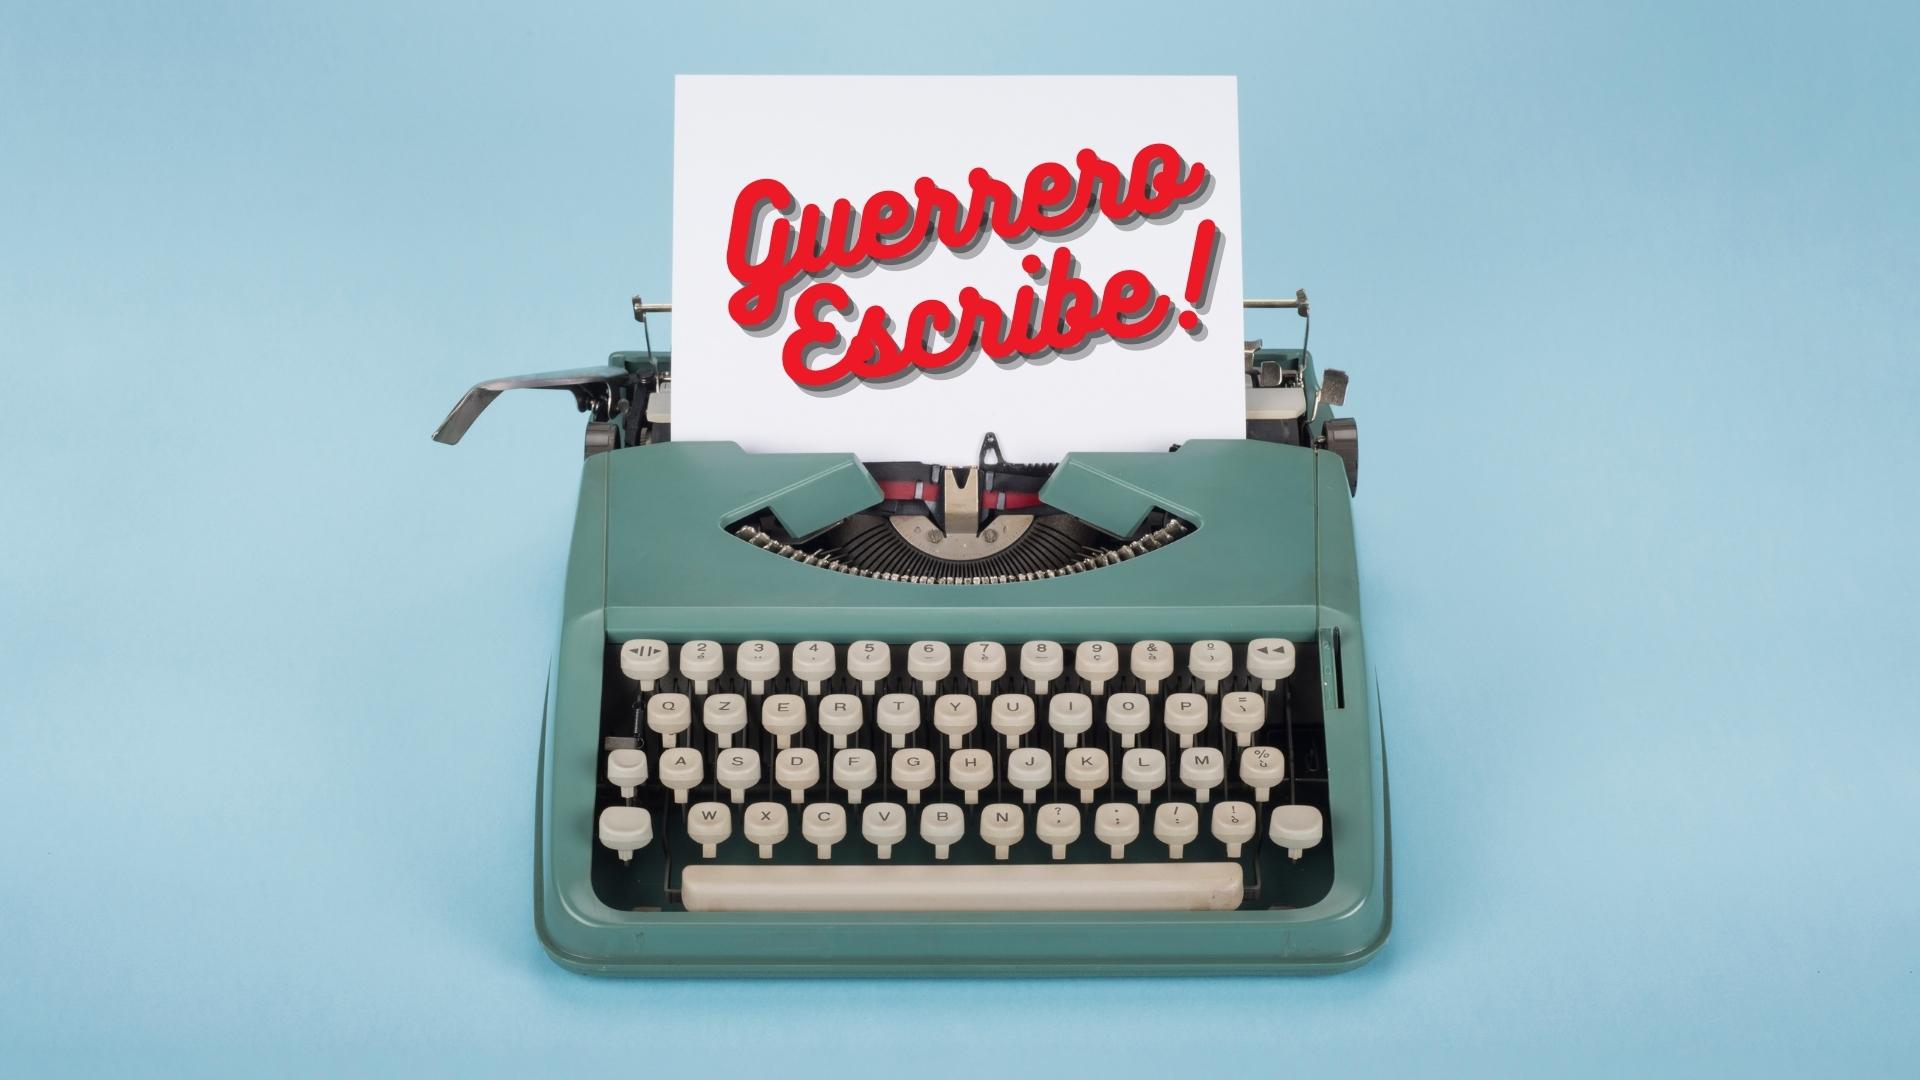 Publicaciones Editoriales: Guerrero Escribe